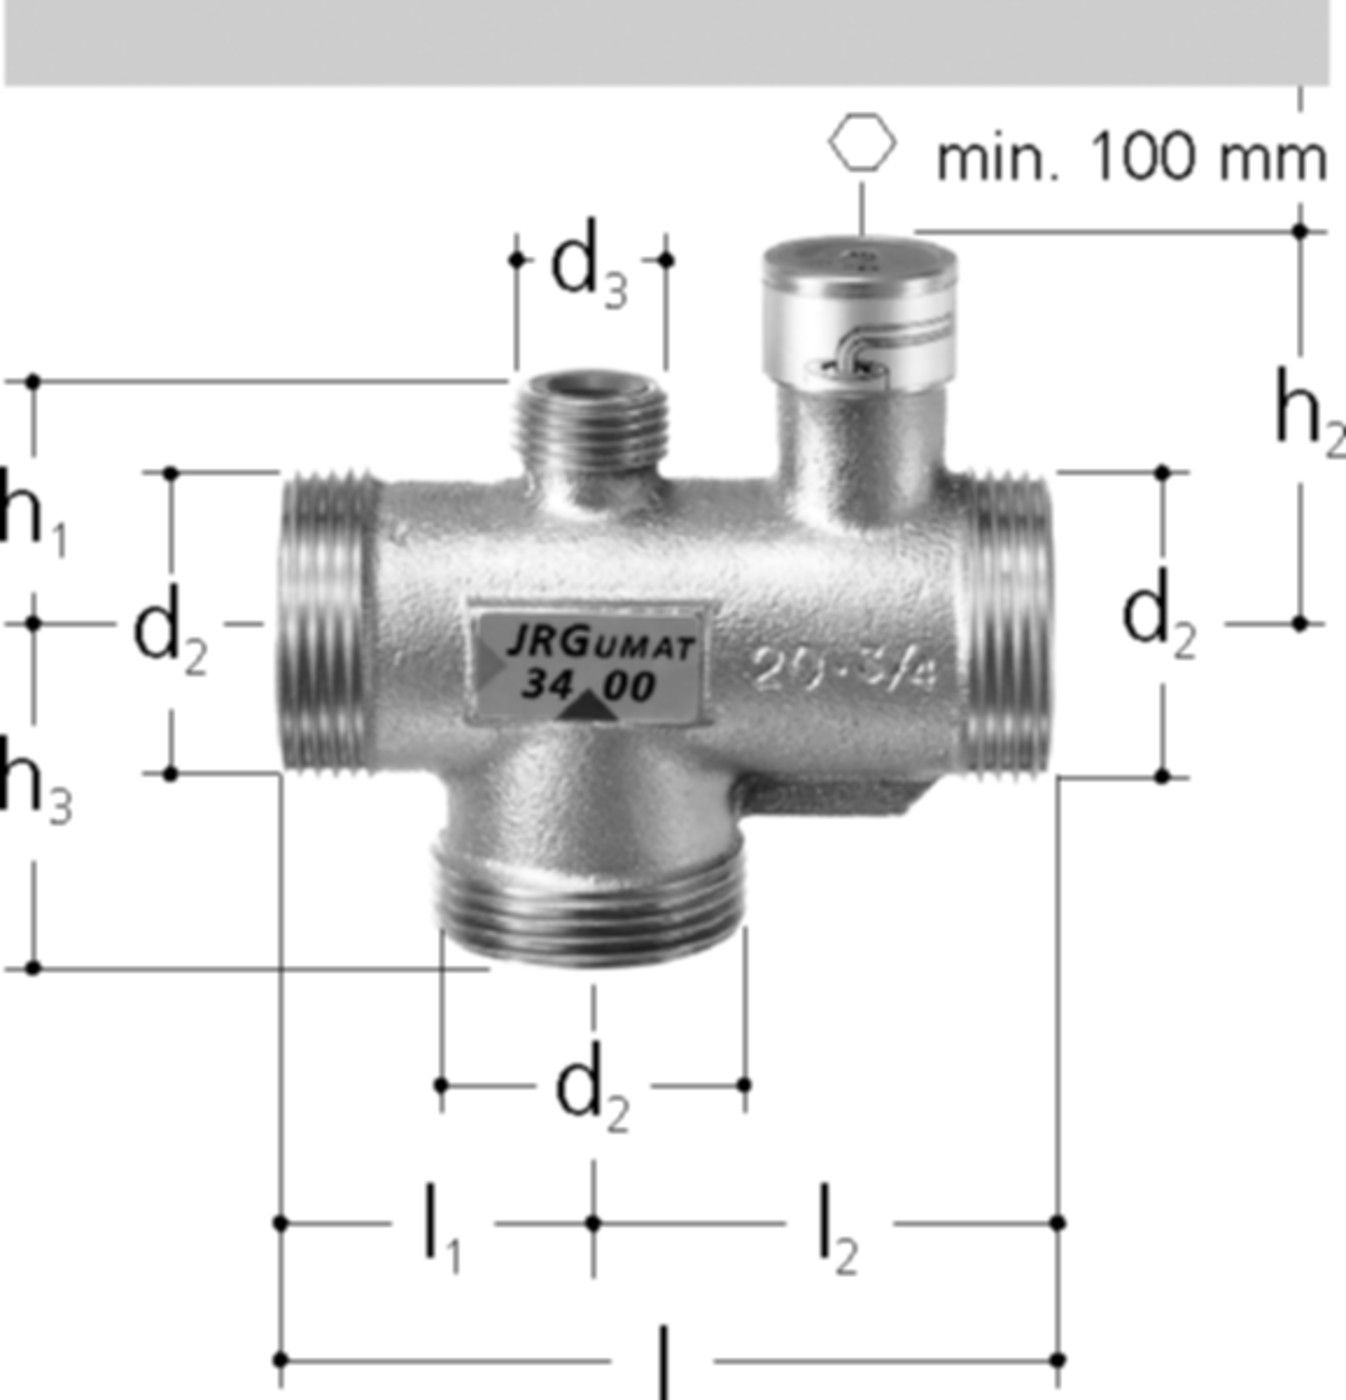 JRGUMAT Thermomischer PN 10 11/2" DN 40 55°C 3400.956 - JRG Armaturen